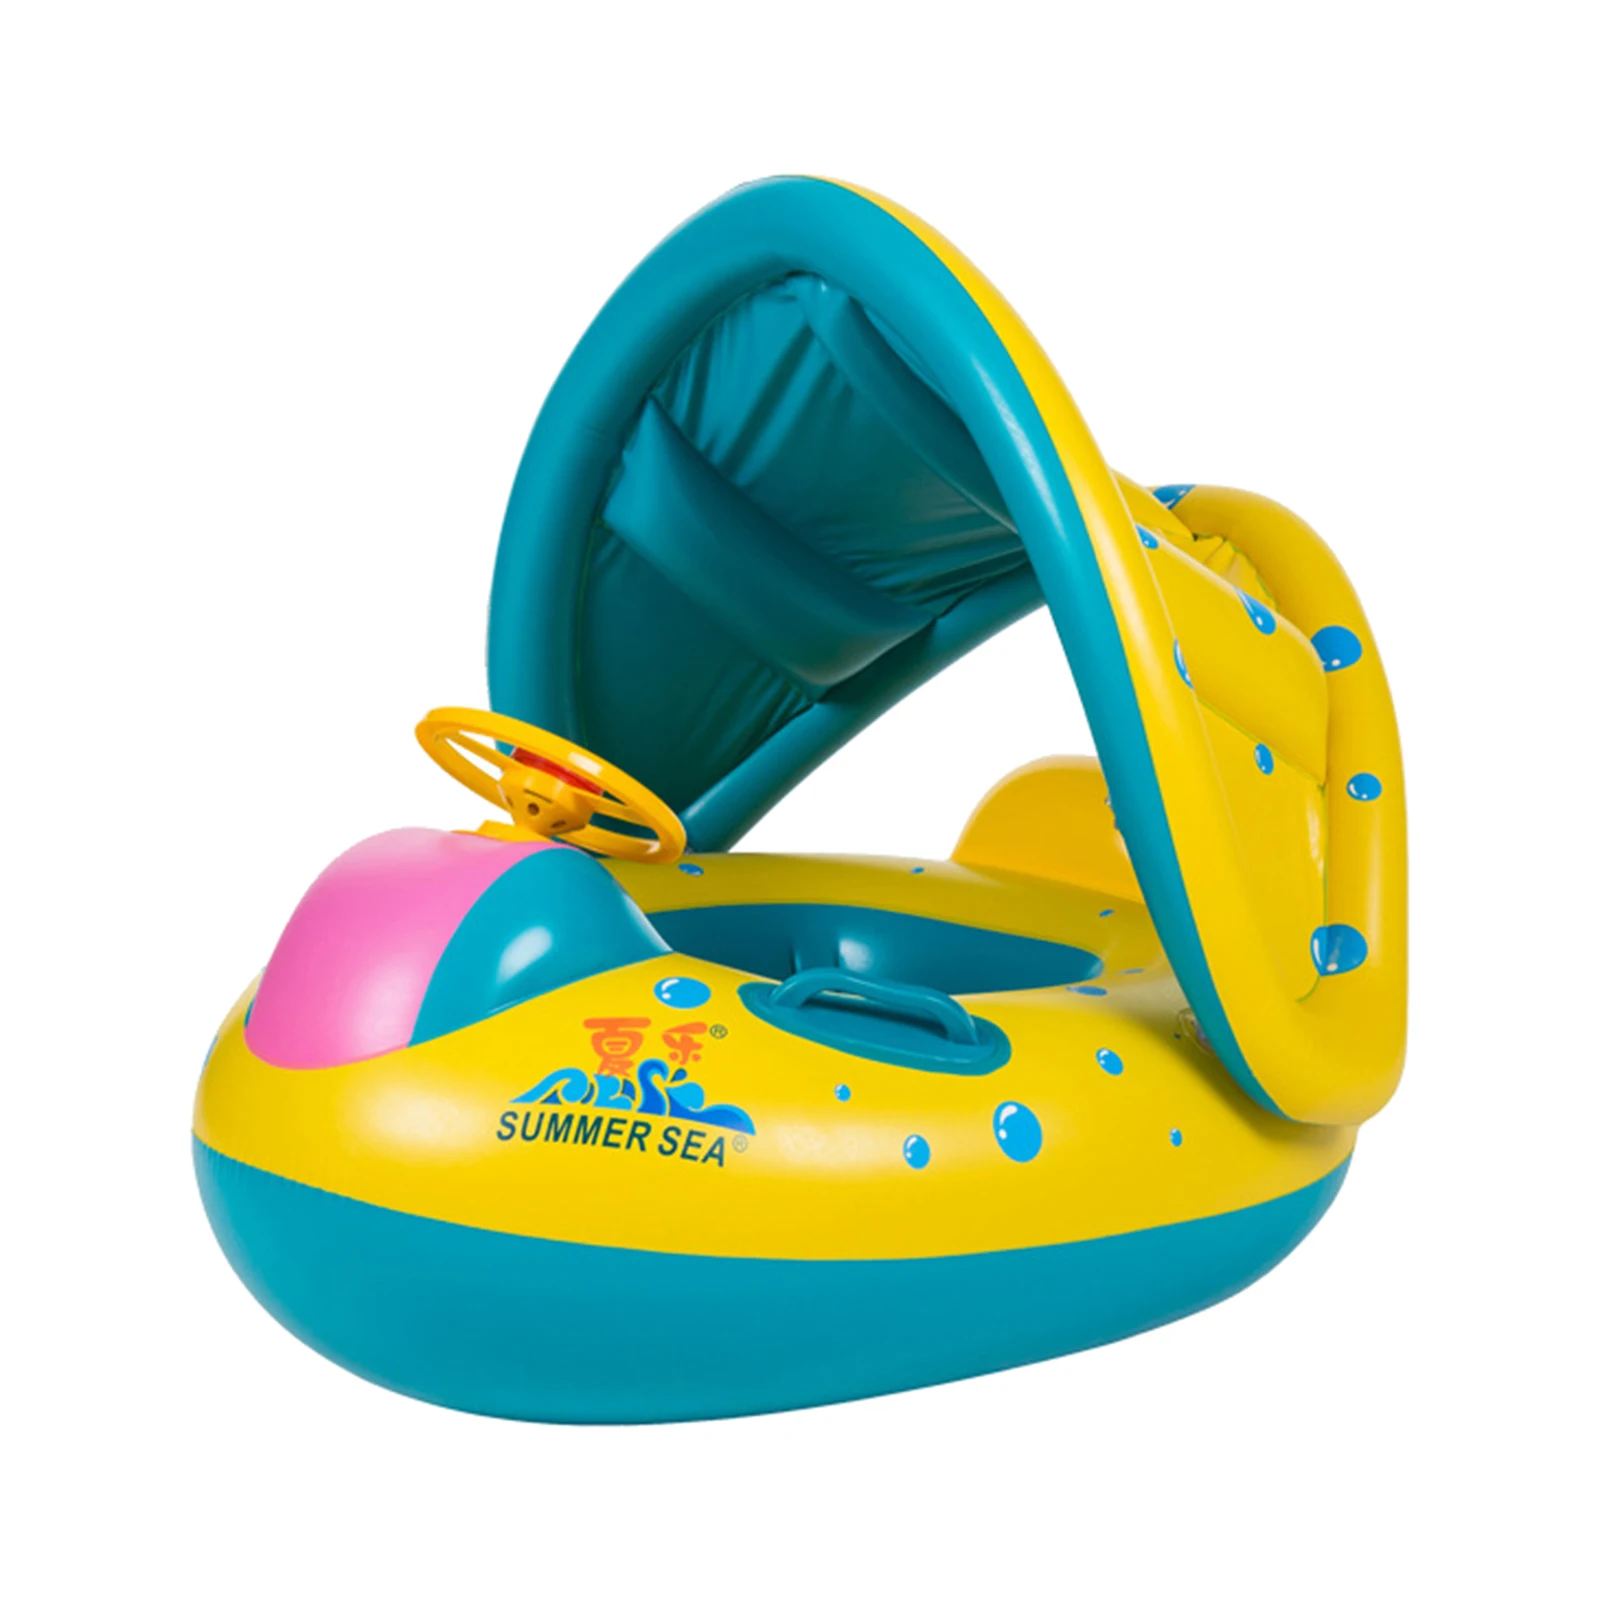 

Детский плавательный круг, большой плавательный круг со съемным солнцезащитным навесом, Детские Веселые игрушки 12-36 месяцев